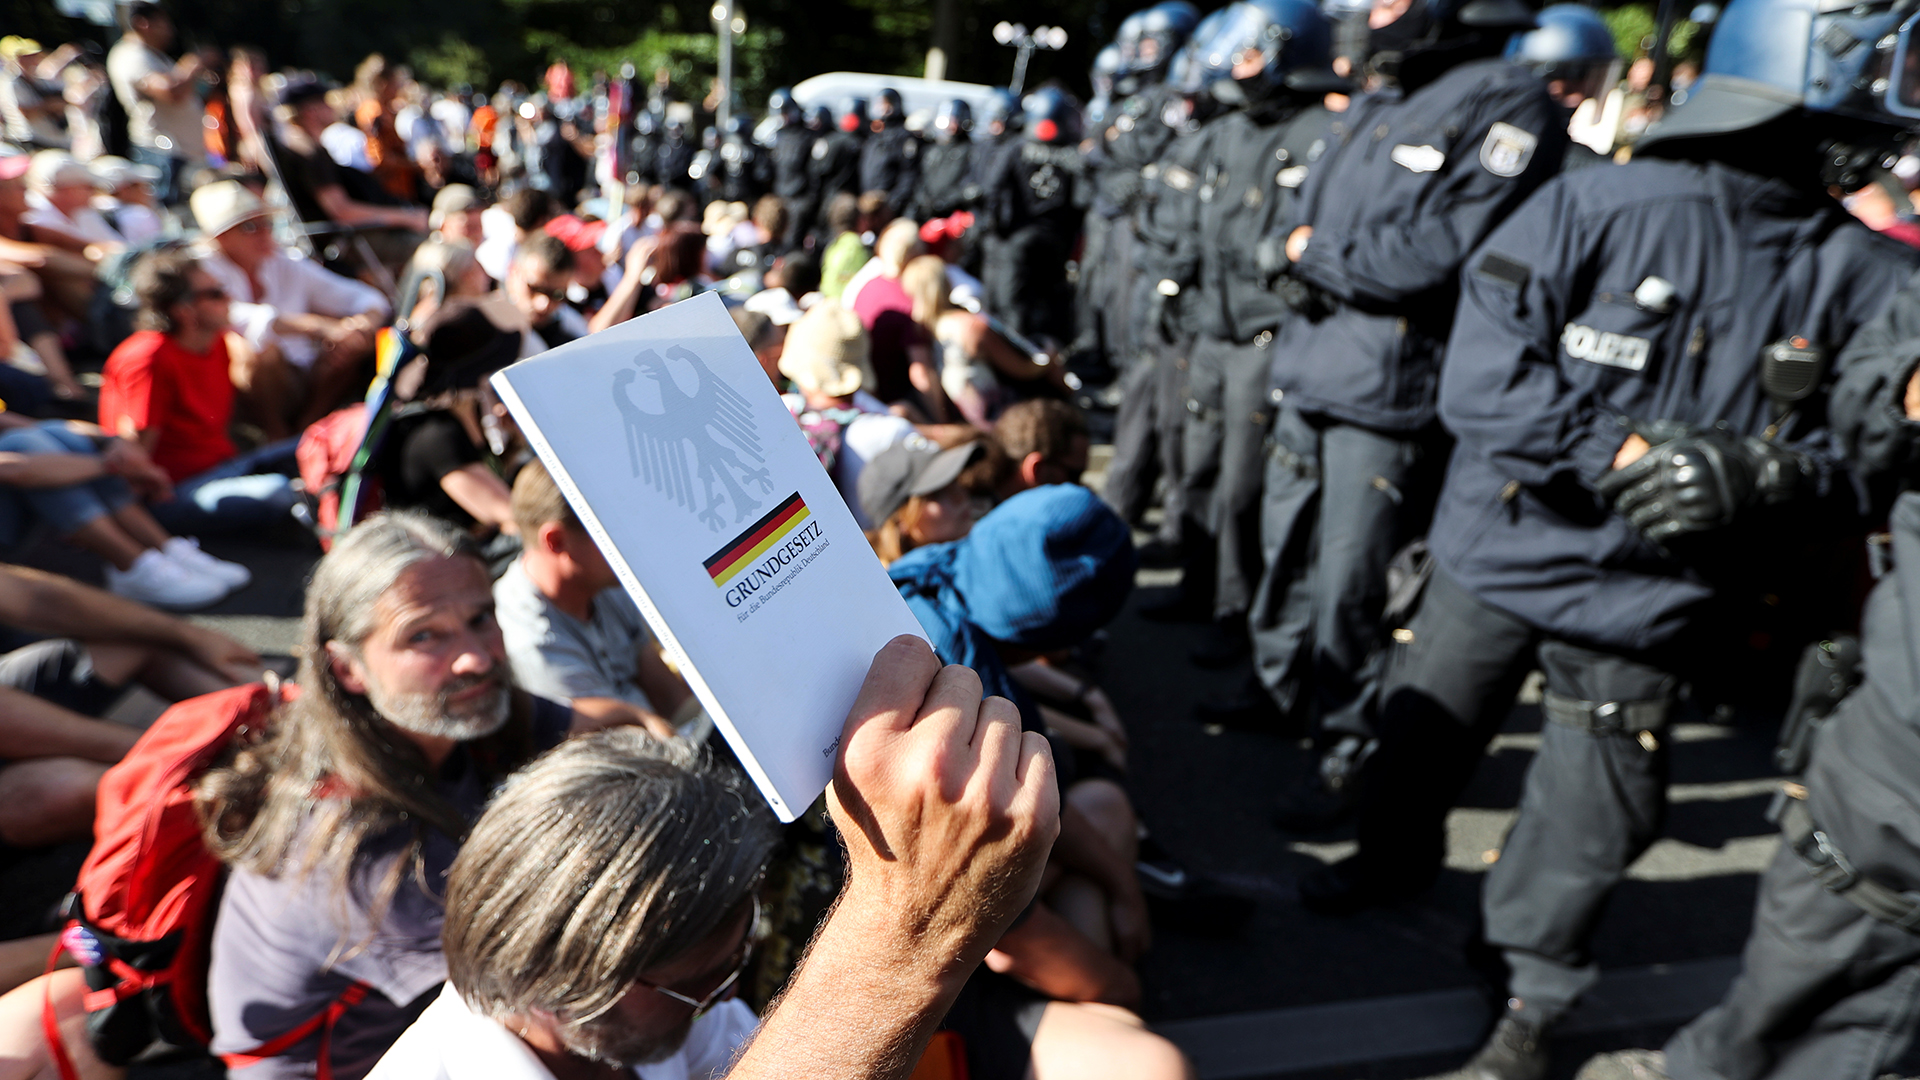 Kundgebung in Berlin gegen die Corona-Beschränkungen